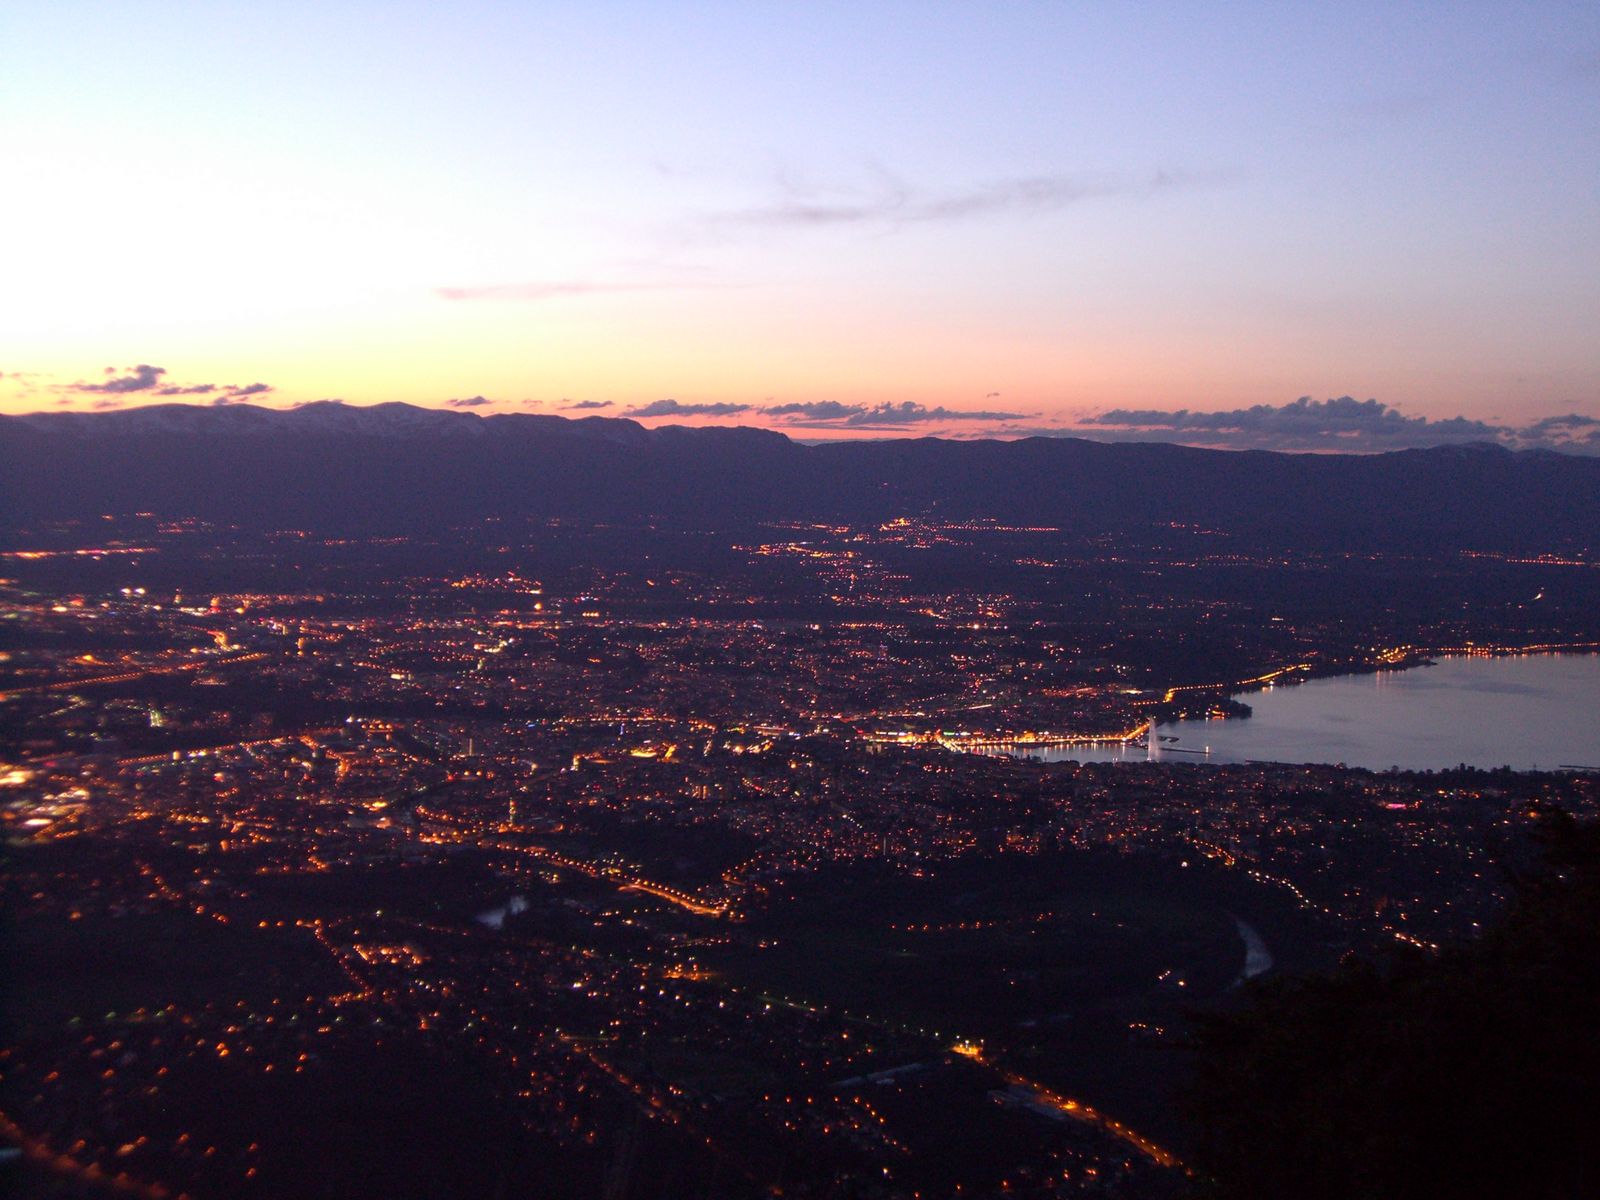 the city of Geneva at night